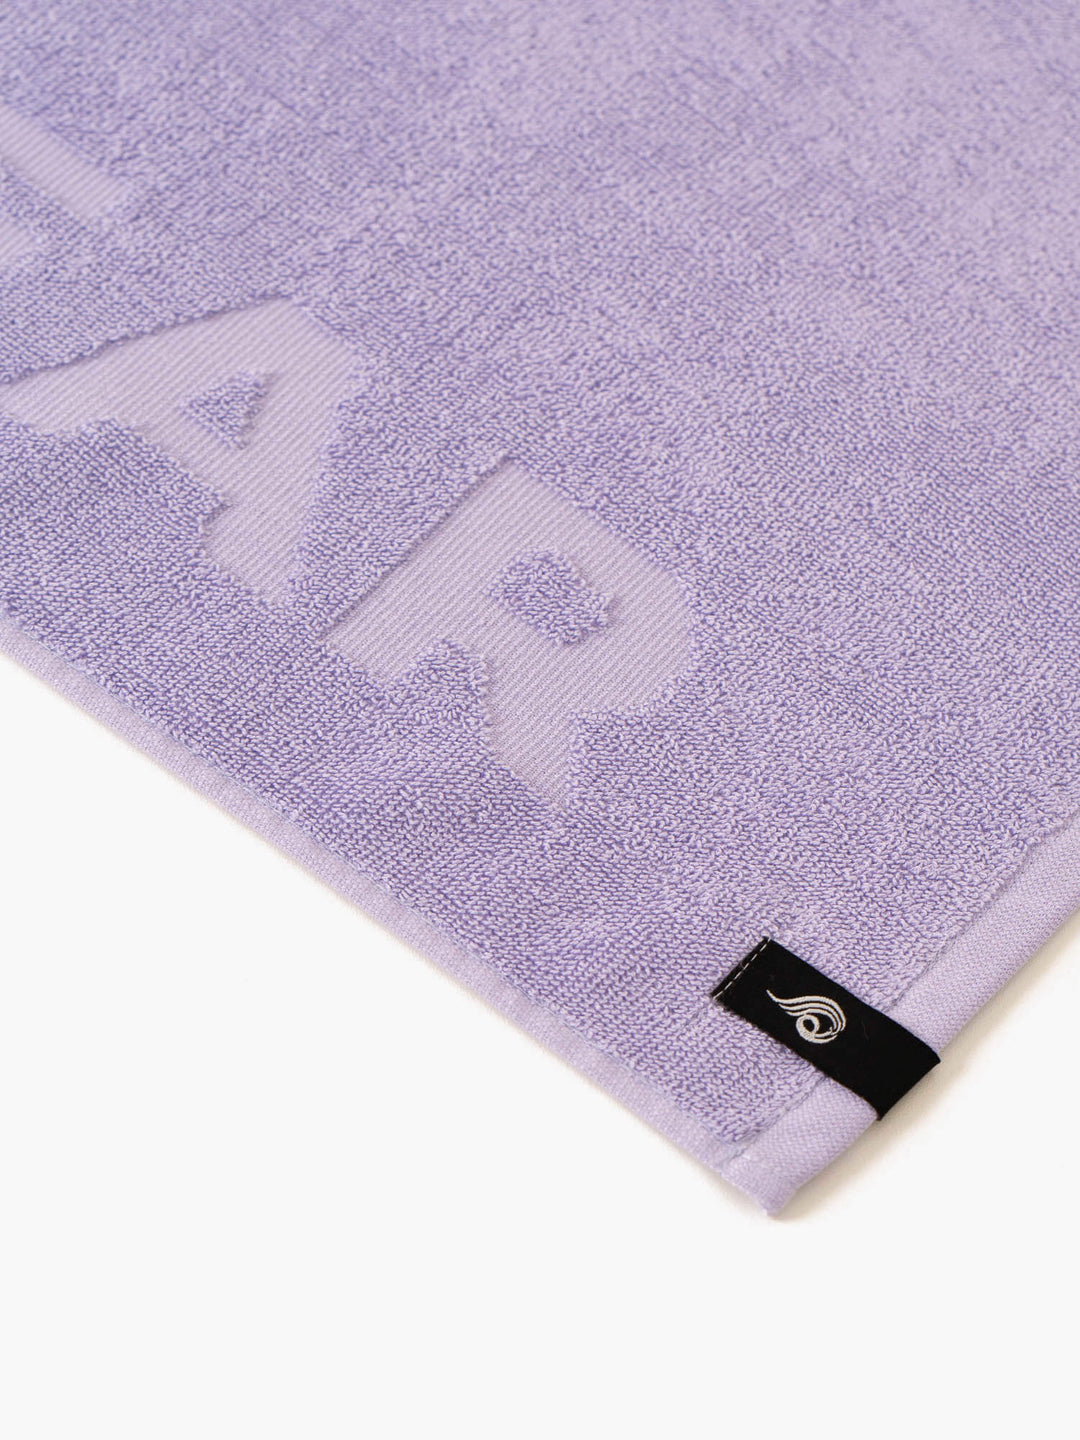 Gym Towel - Lavender Accessories Ryderwear 